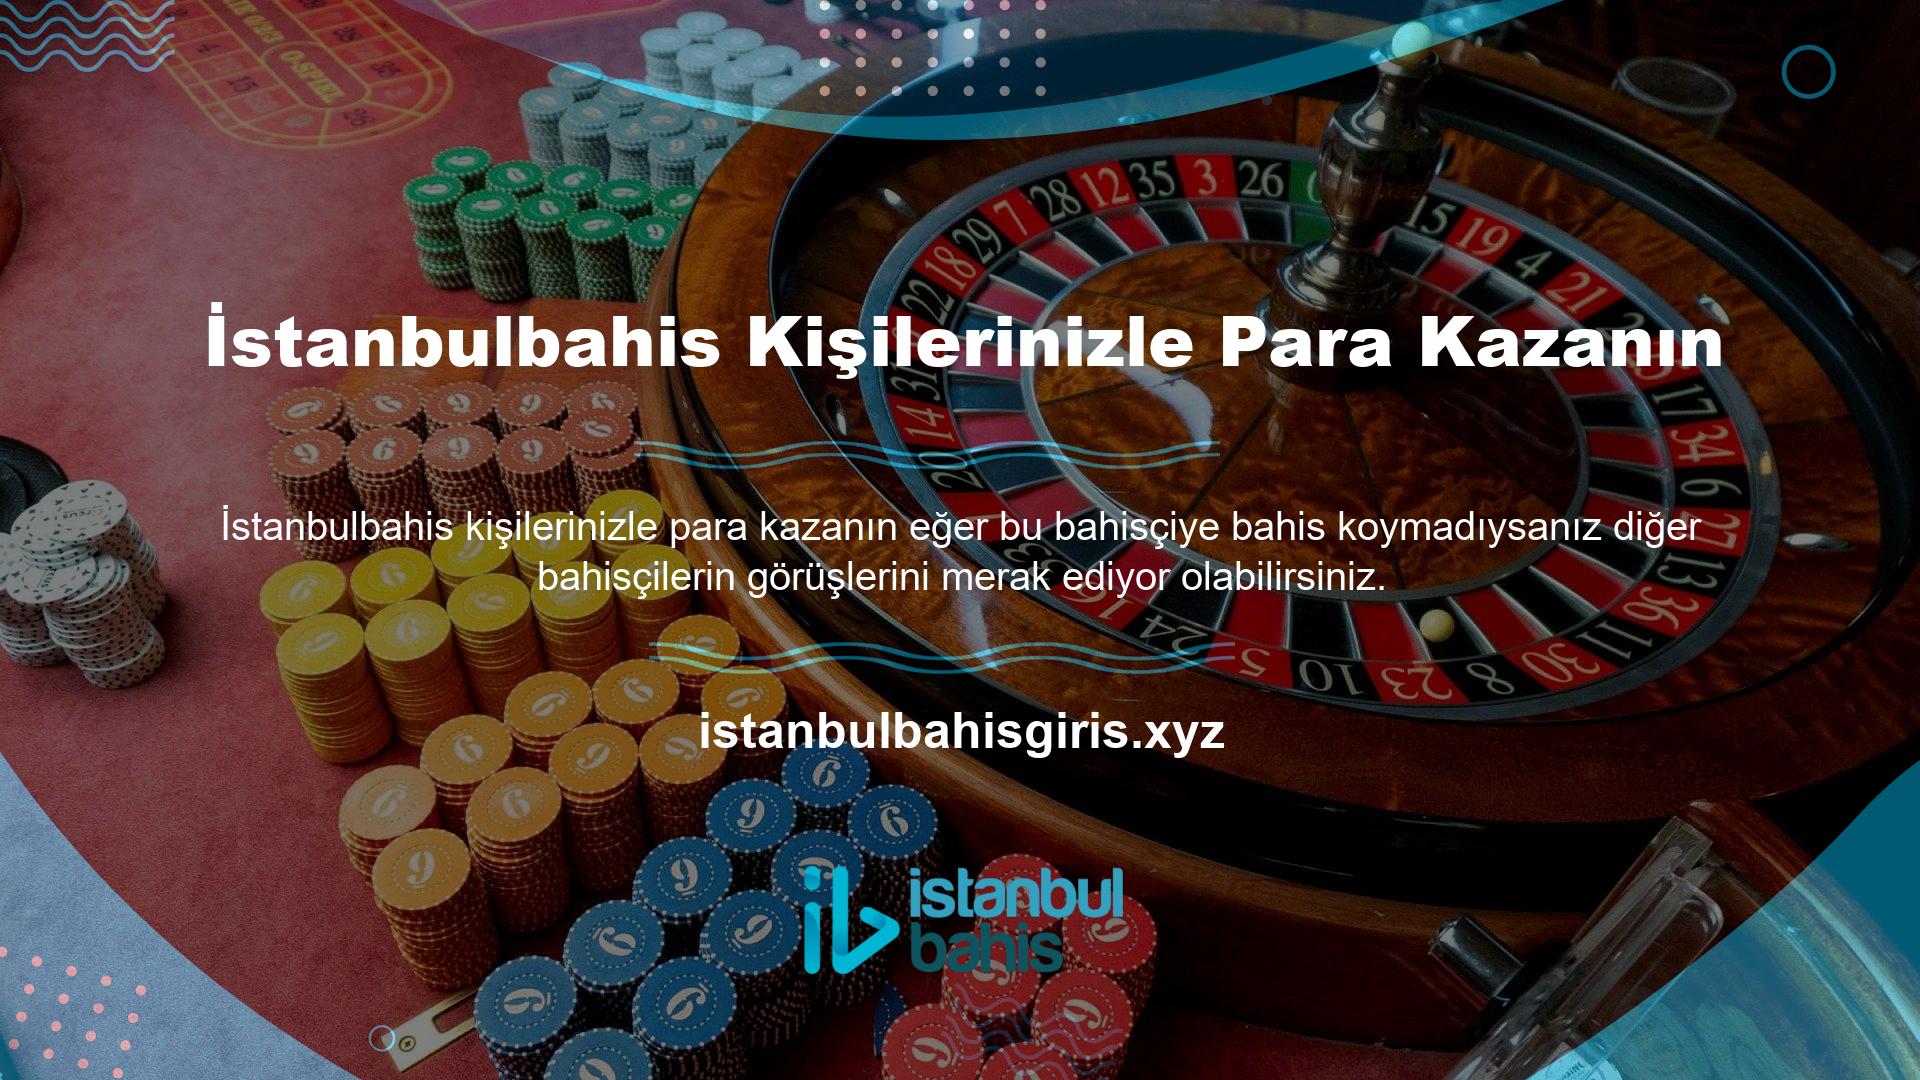 İstanbulbahis tüm oyun oyuncularına memnuniyeti garanti eder